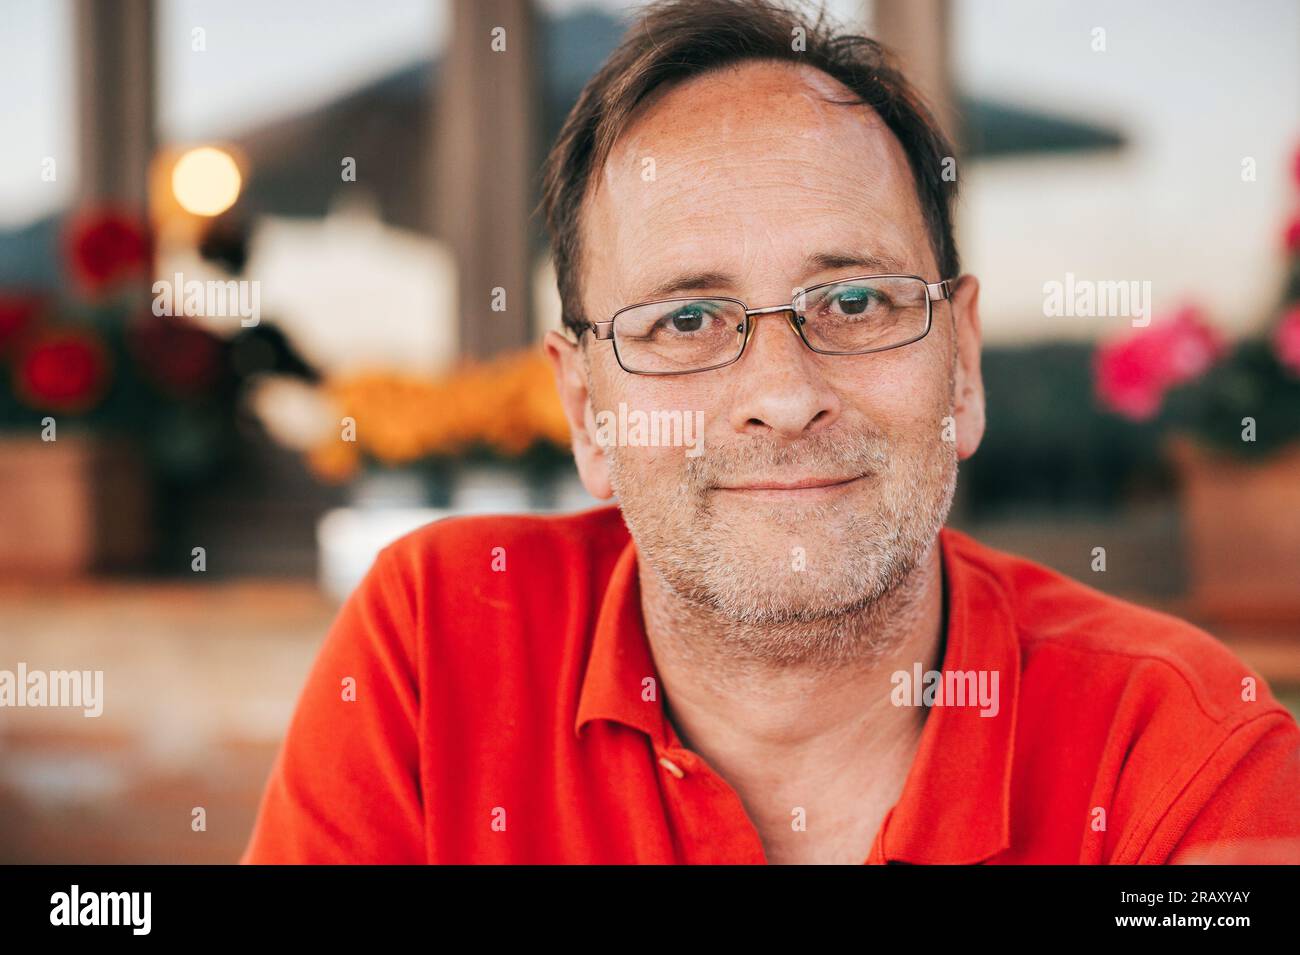 Ritratto all'aperto di un uomo di 50 anni che indossa una polo rossa e occhiali da vista Foto Stock